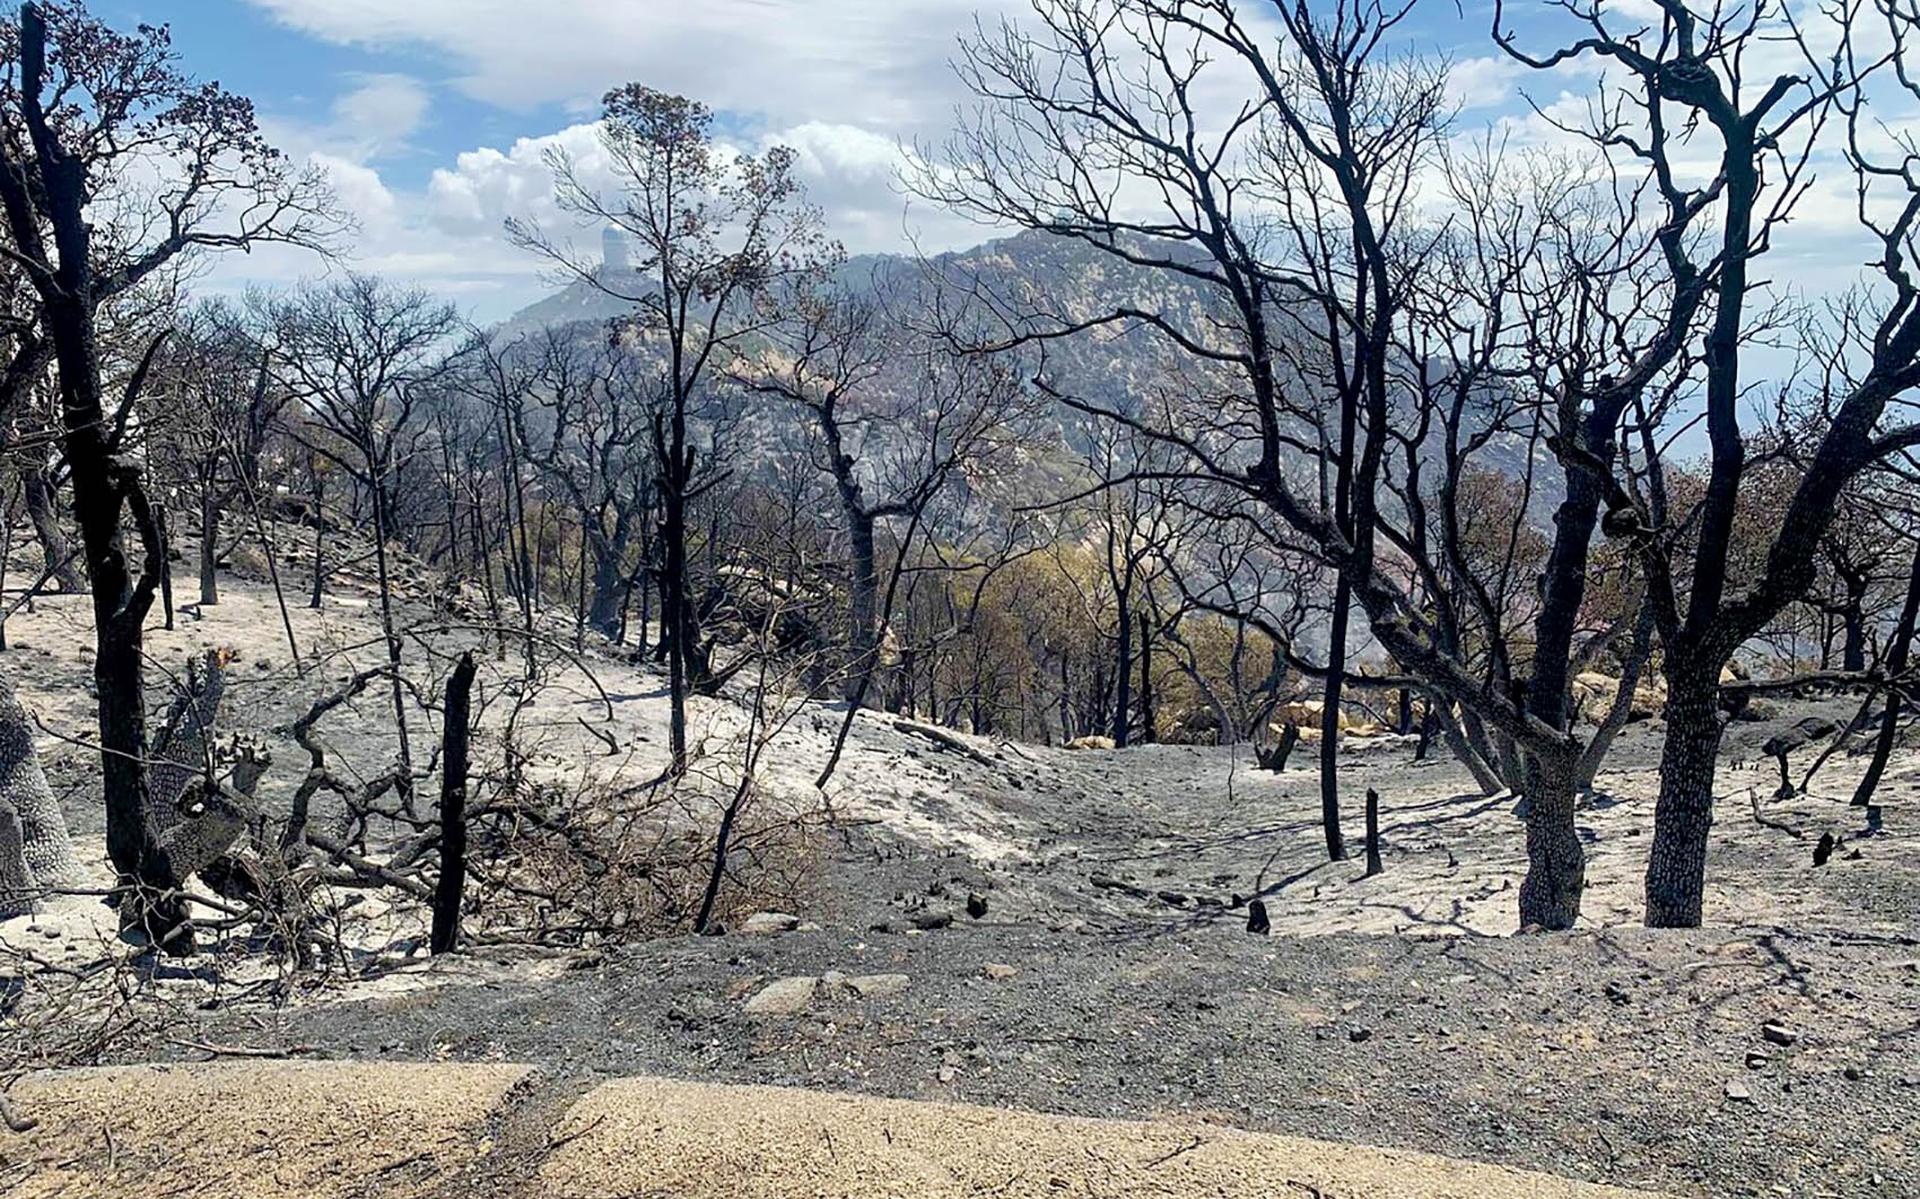 Door brand verwoest landschap nabij de Kitt Peak National Observatory op de tegenoverliggende berg. 